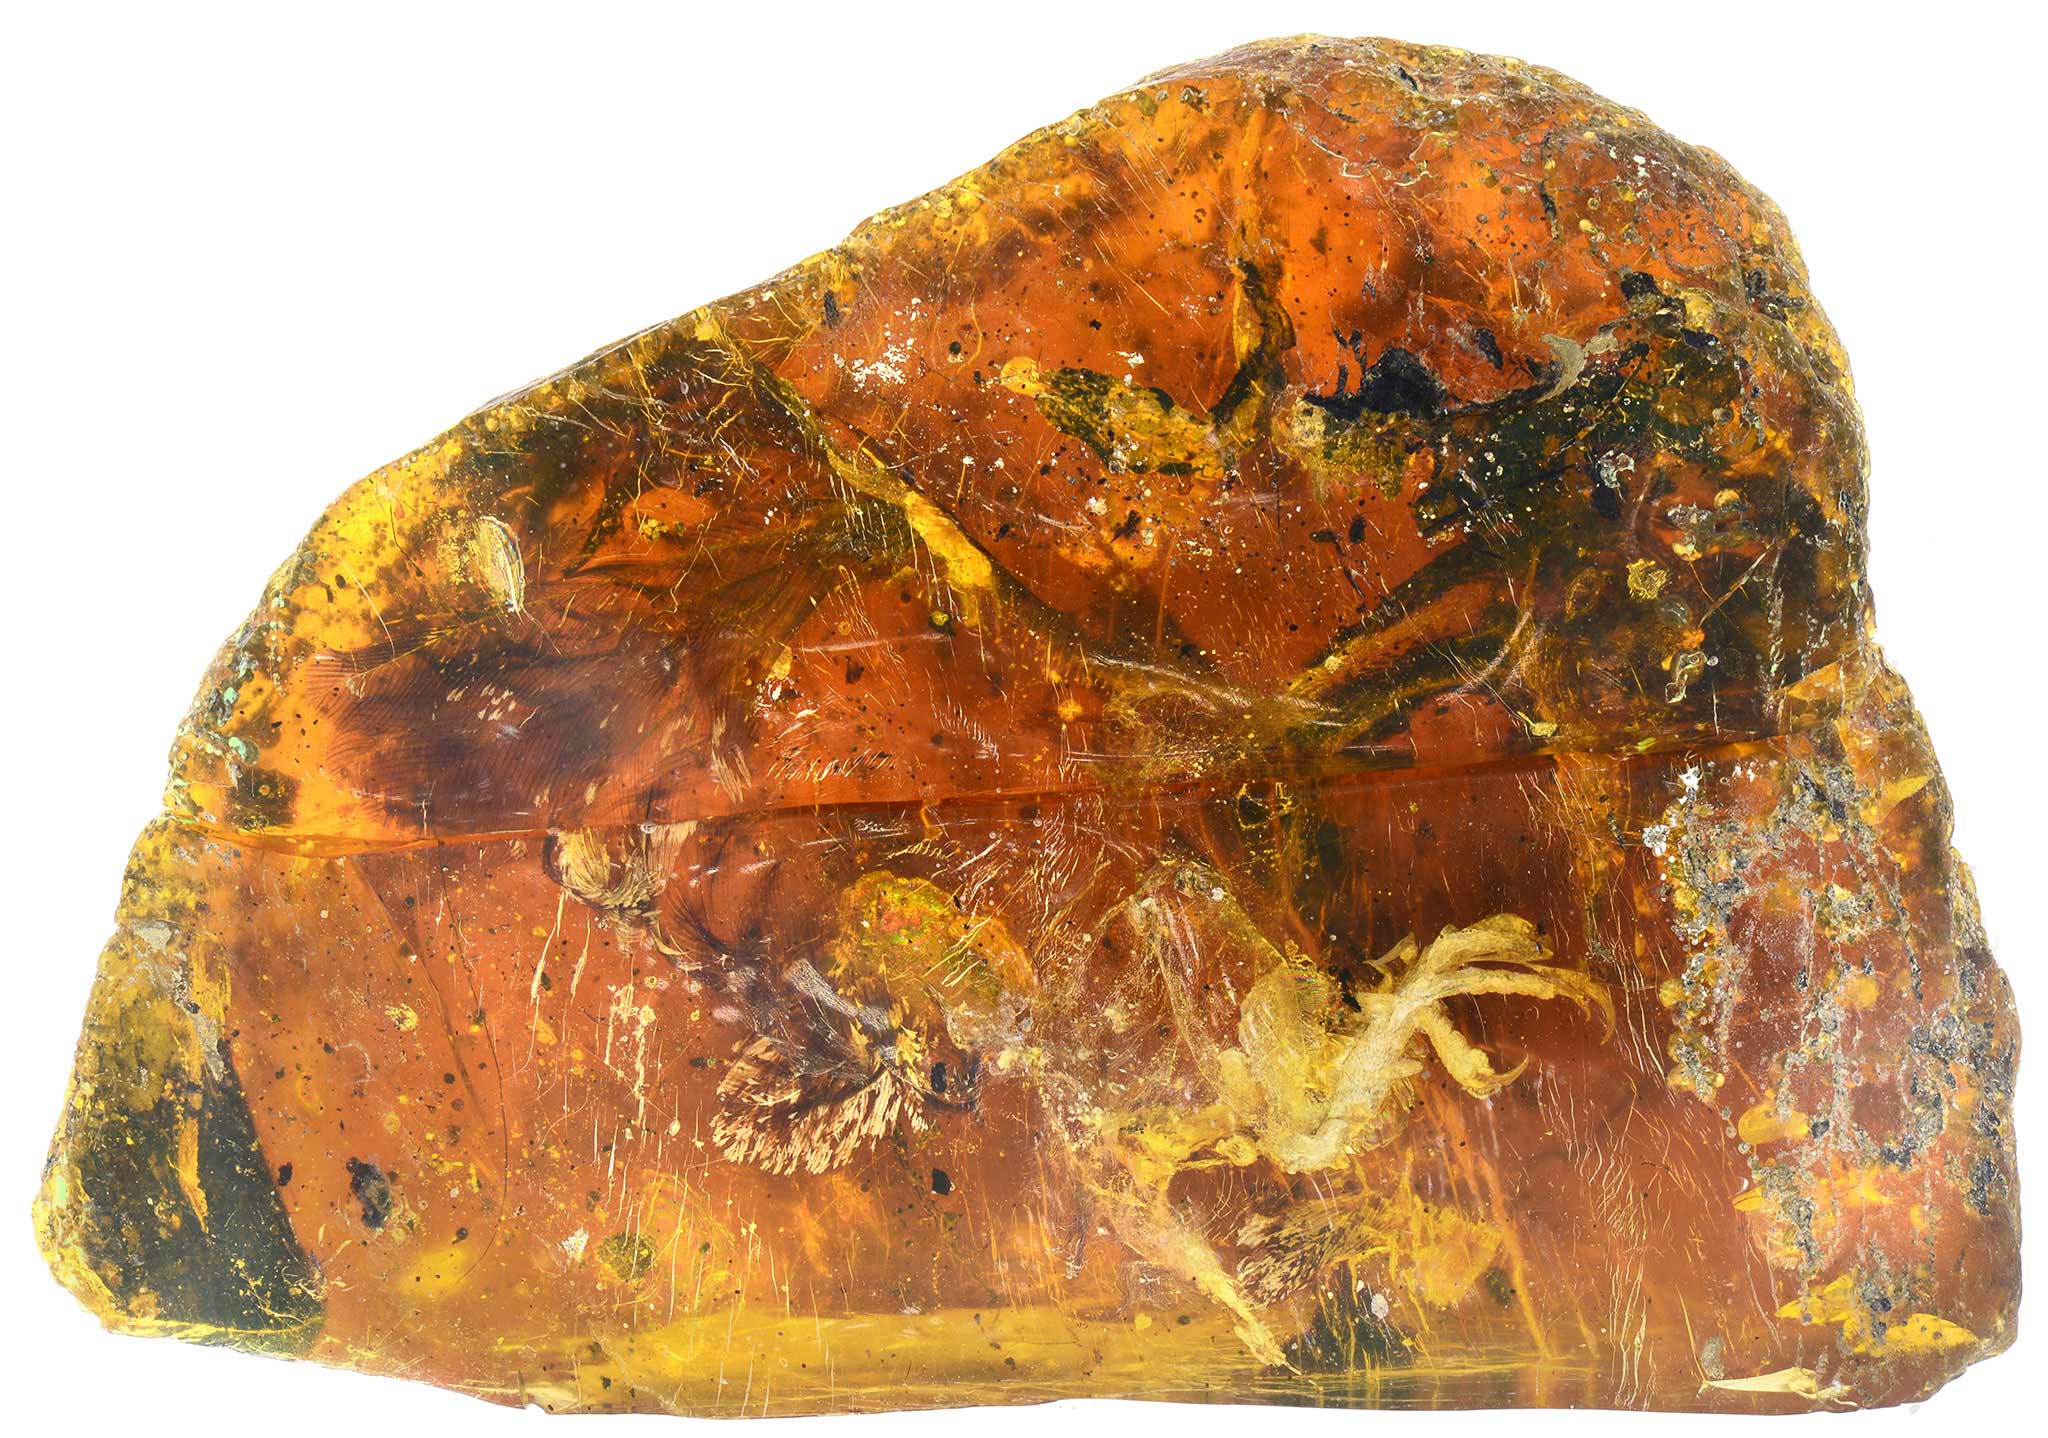 Ученые показали обитателя Земли, застывшего в янтаре 99 миллионов лет назад - фото National Geographic